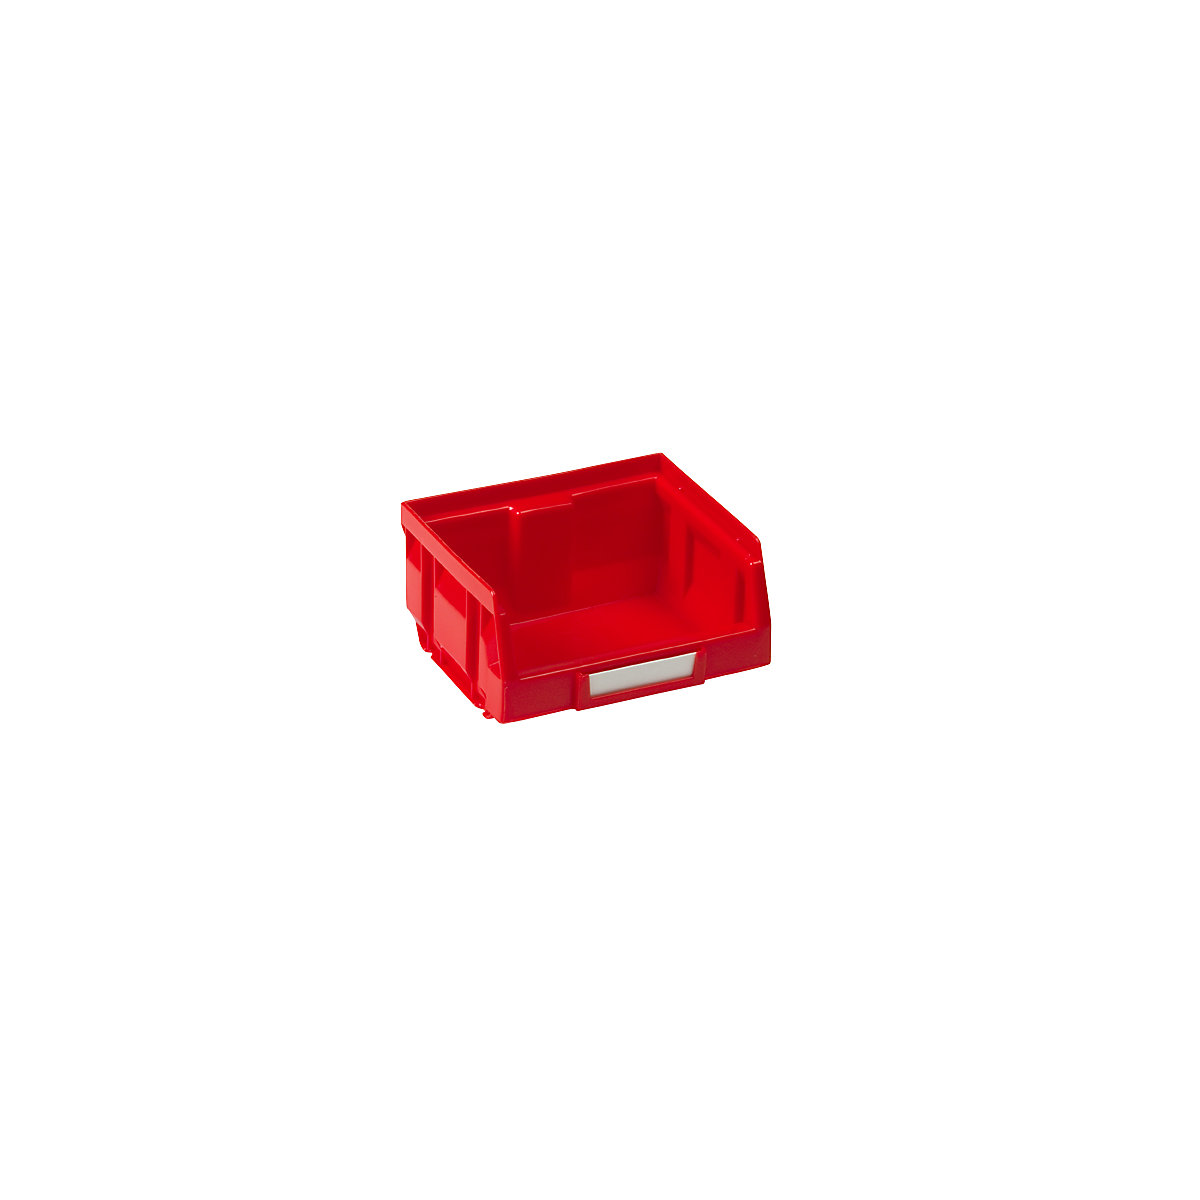 Přepravka s viditelným obsahem z polyetylénu, d x š x v 88 x 105 x 54 mm, červená, bal.j. 50 ks-9